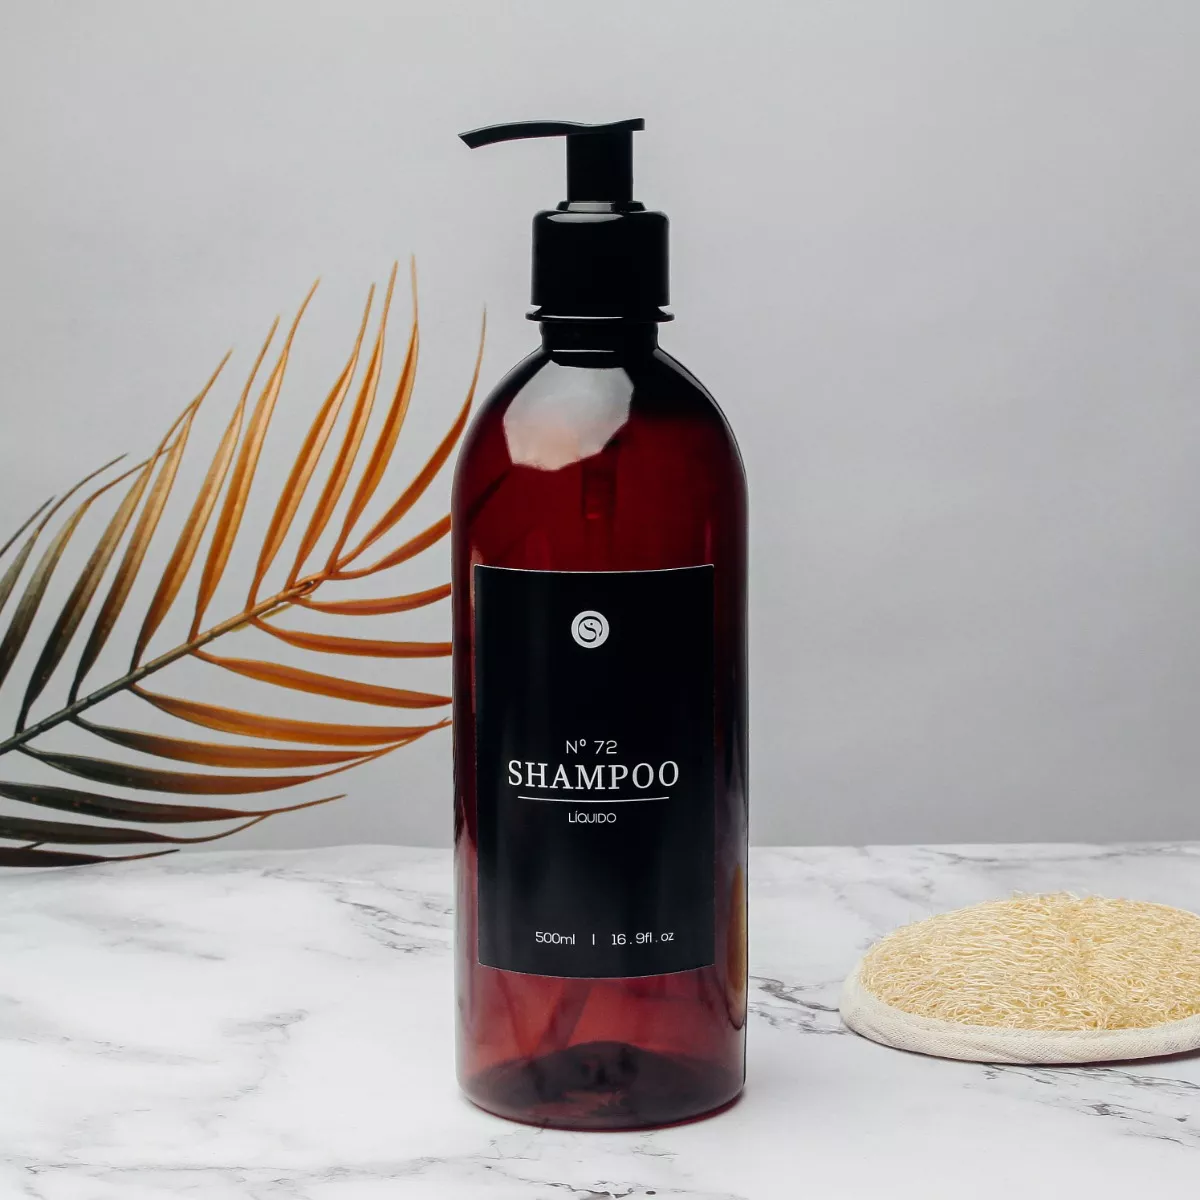 Segunda imagem para pesquisa de dispenser shampoo